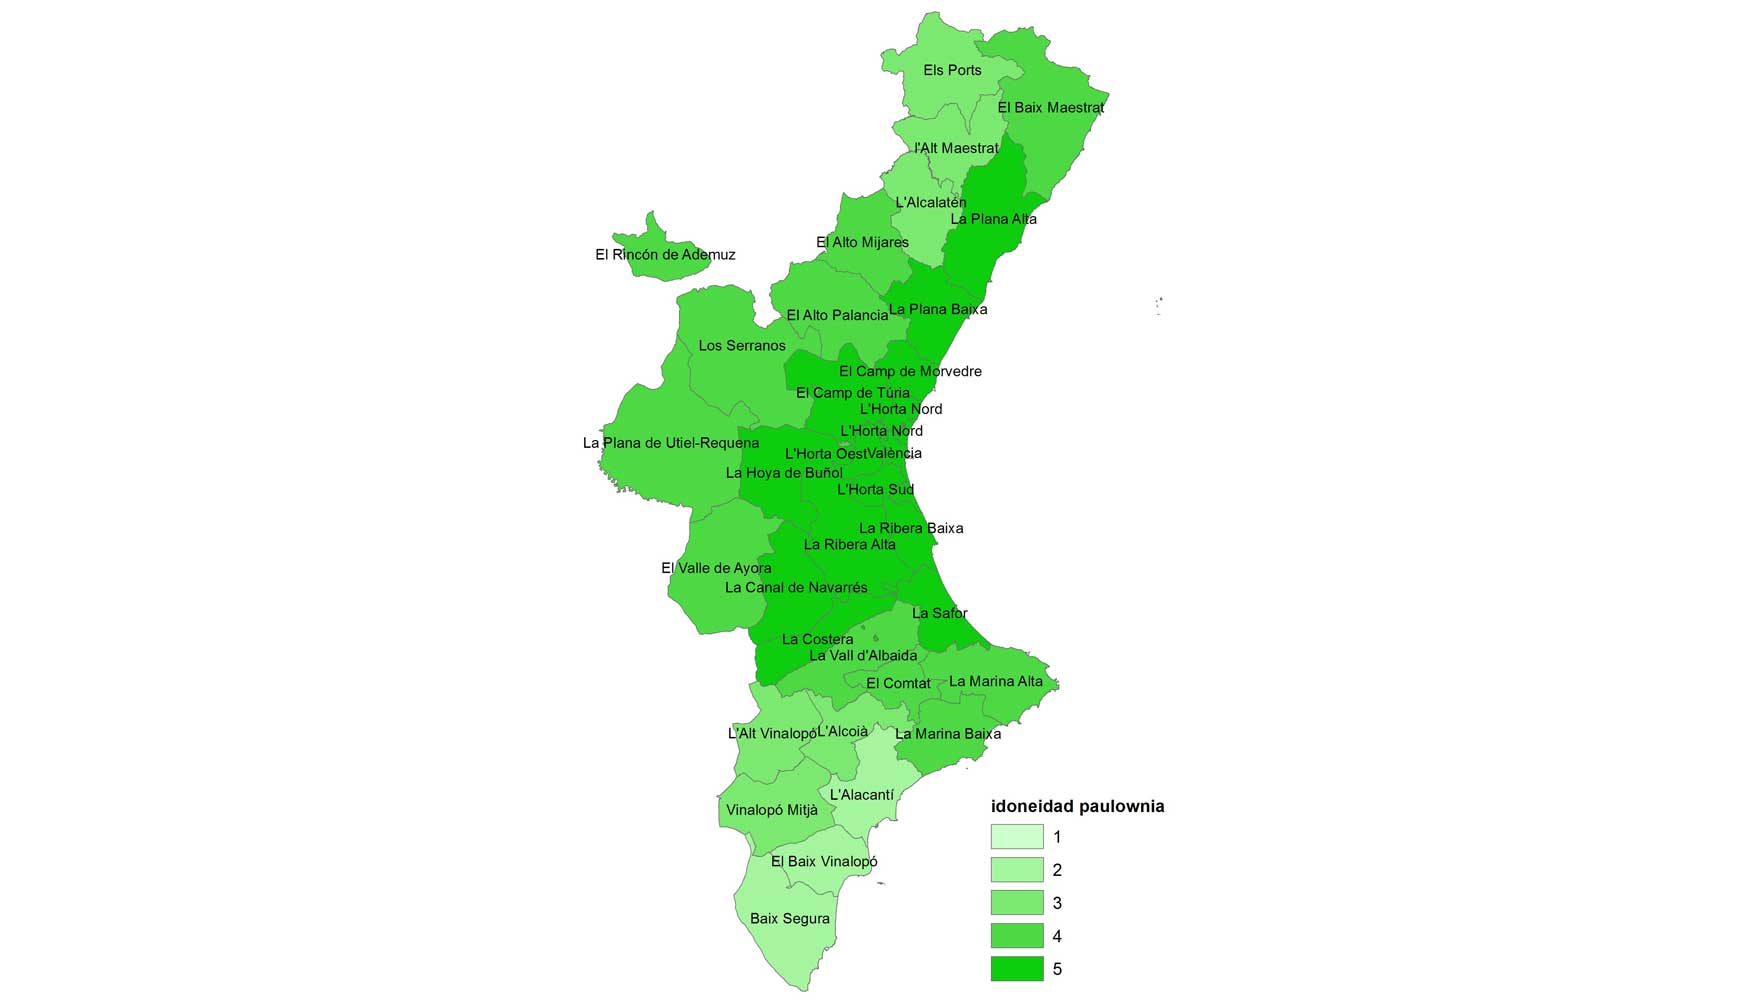 Mapa de idoneidad de la paulownia en la Comunidad Valenciana (1: menor idoneidad; 5: mayor idoneidad)